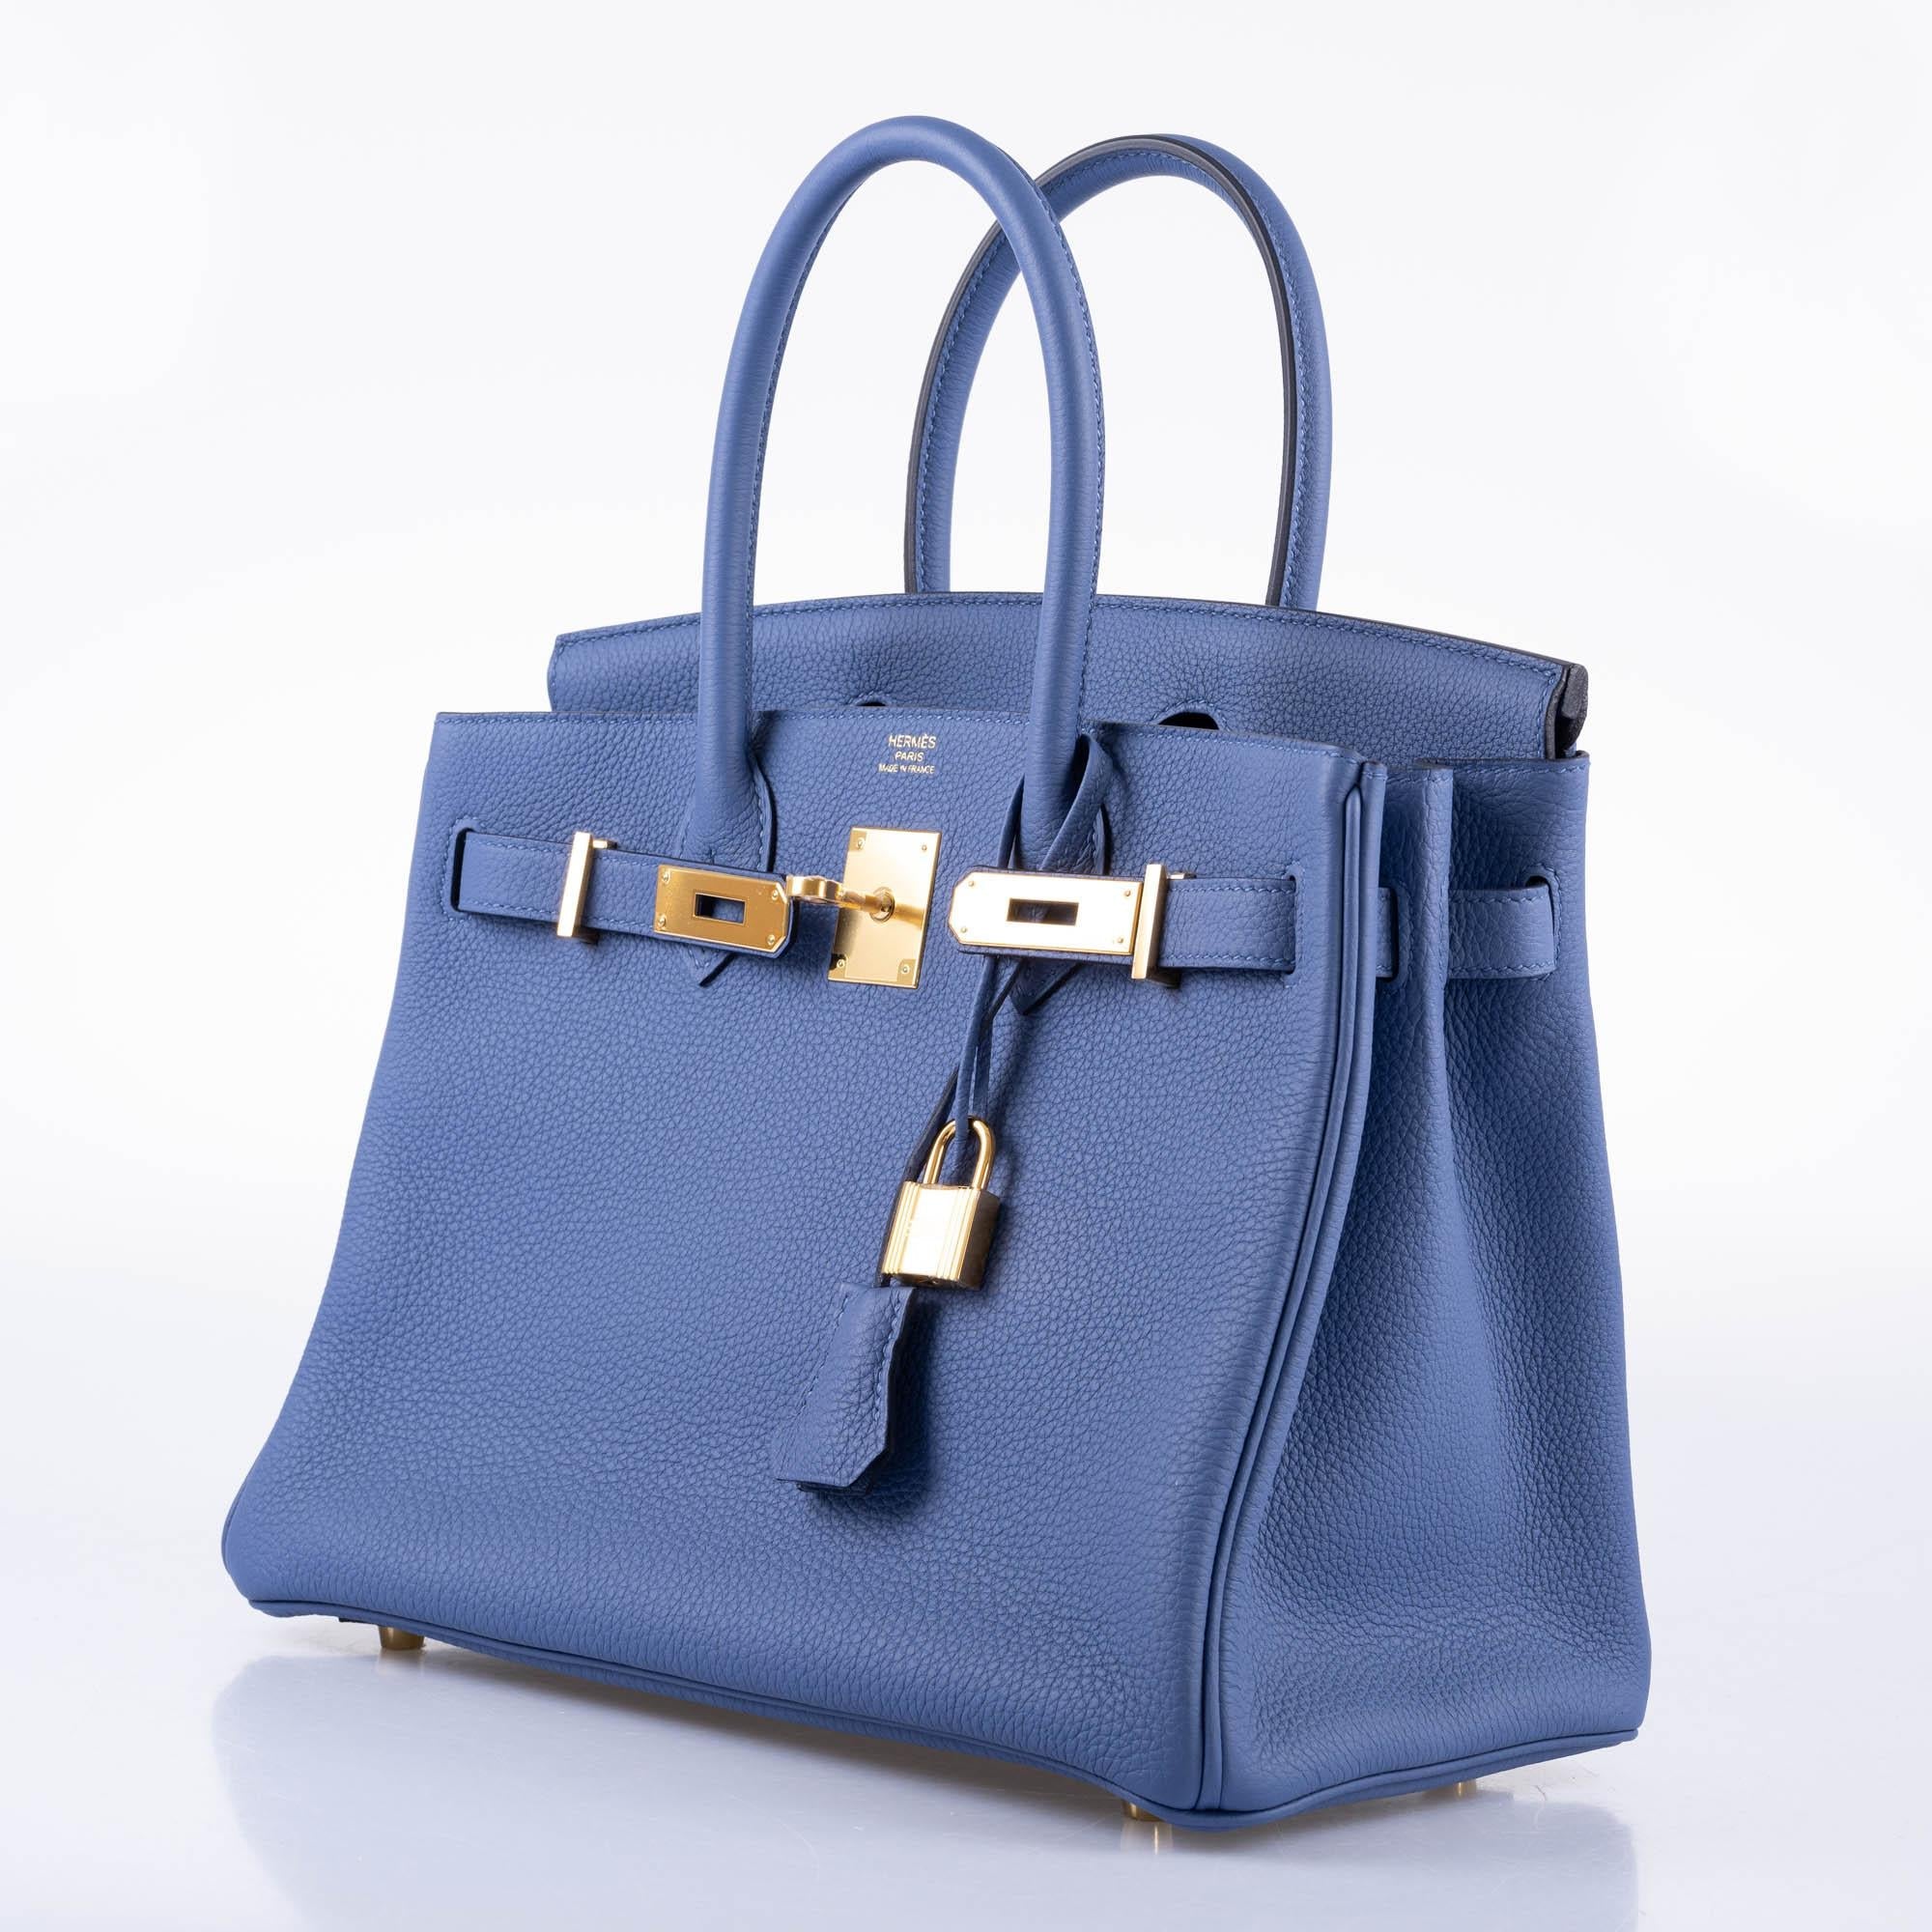 Hermès Birkin 30 Blue Brighton Clemence with Gold Hardware - 2018, C